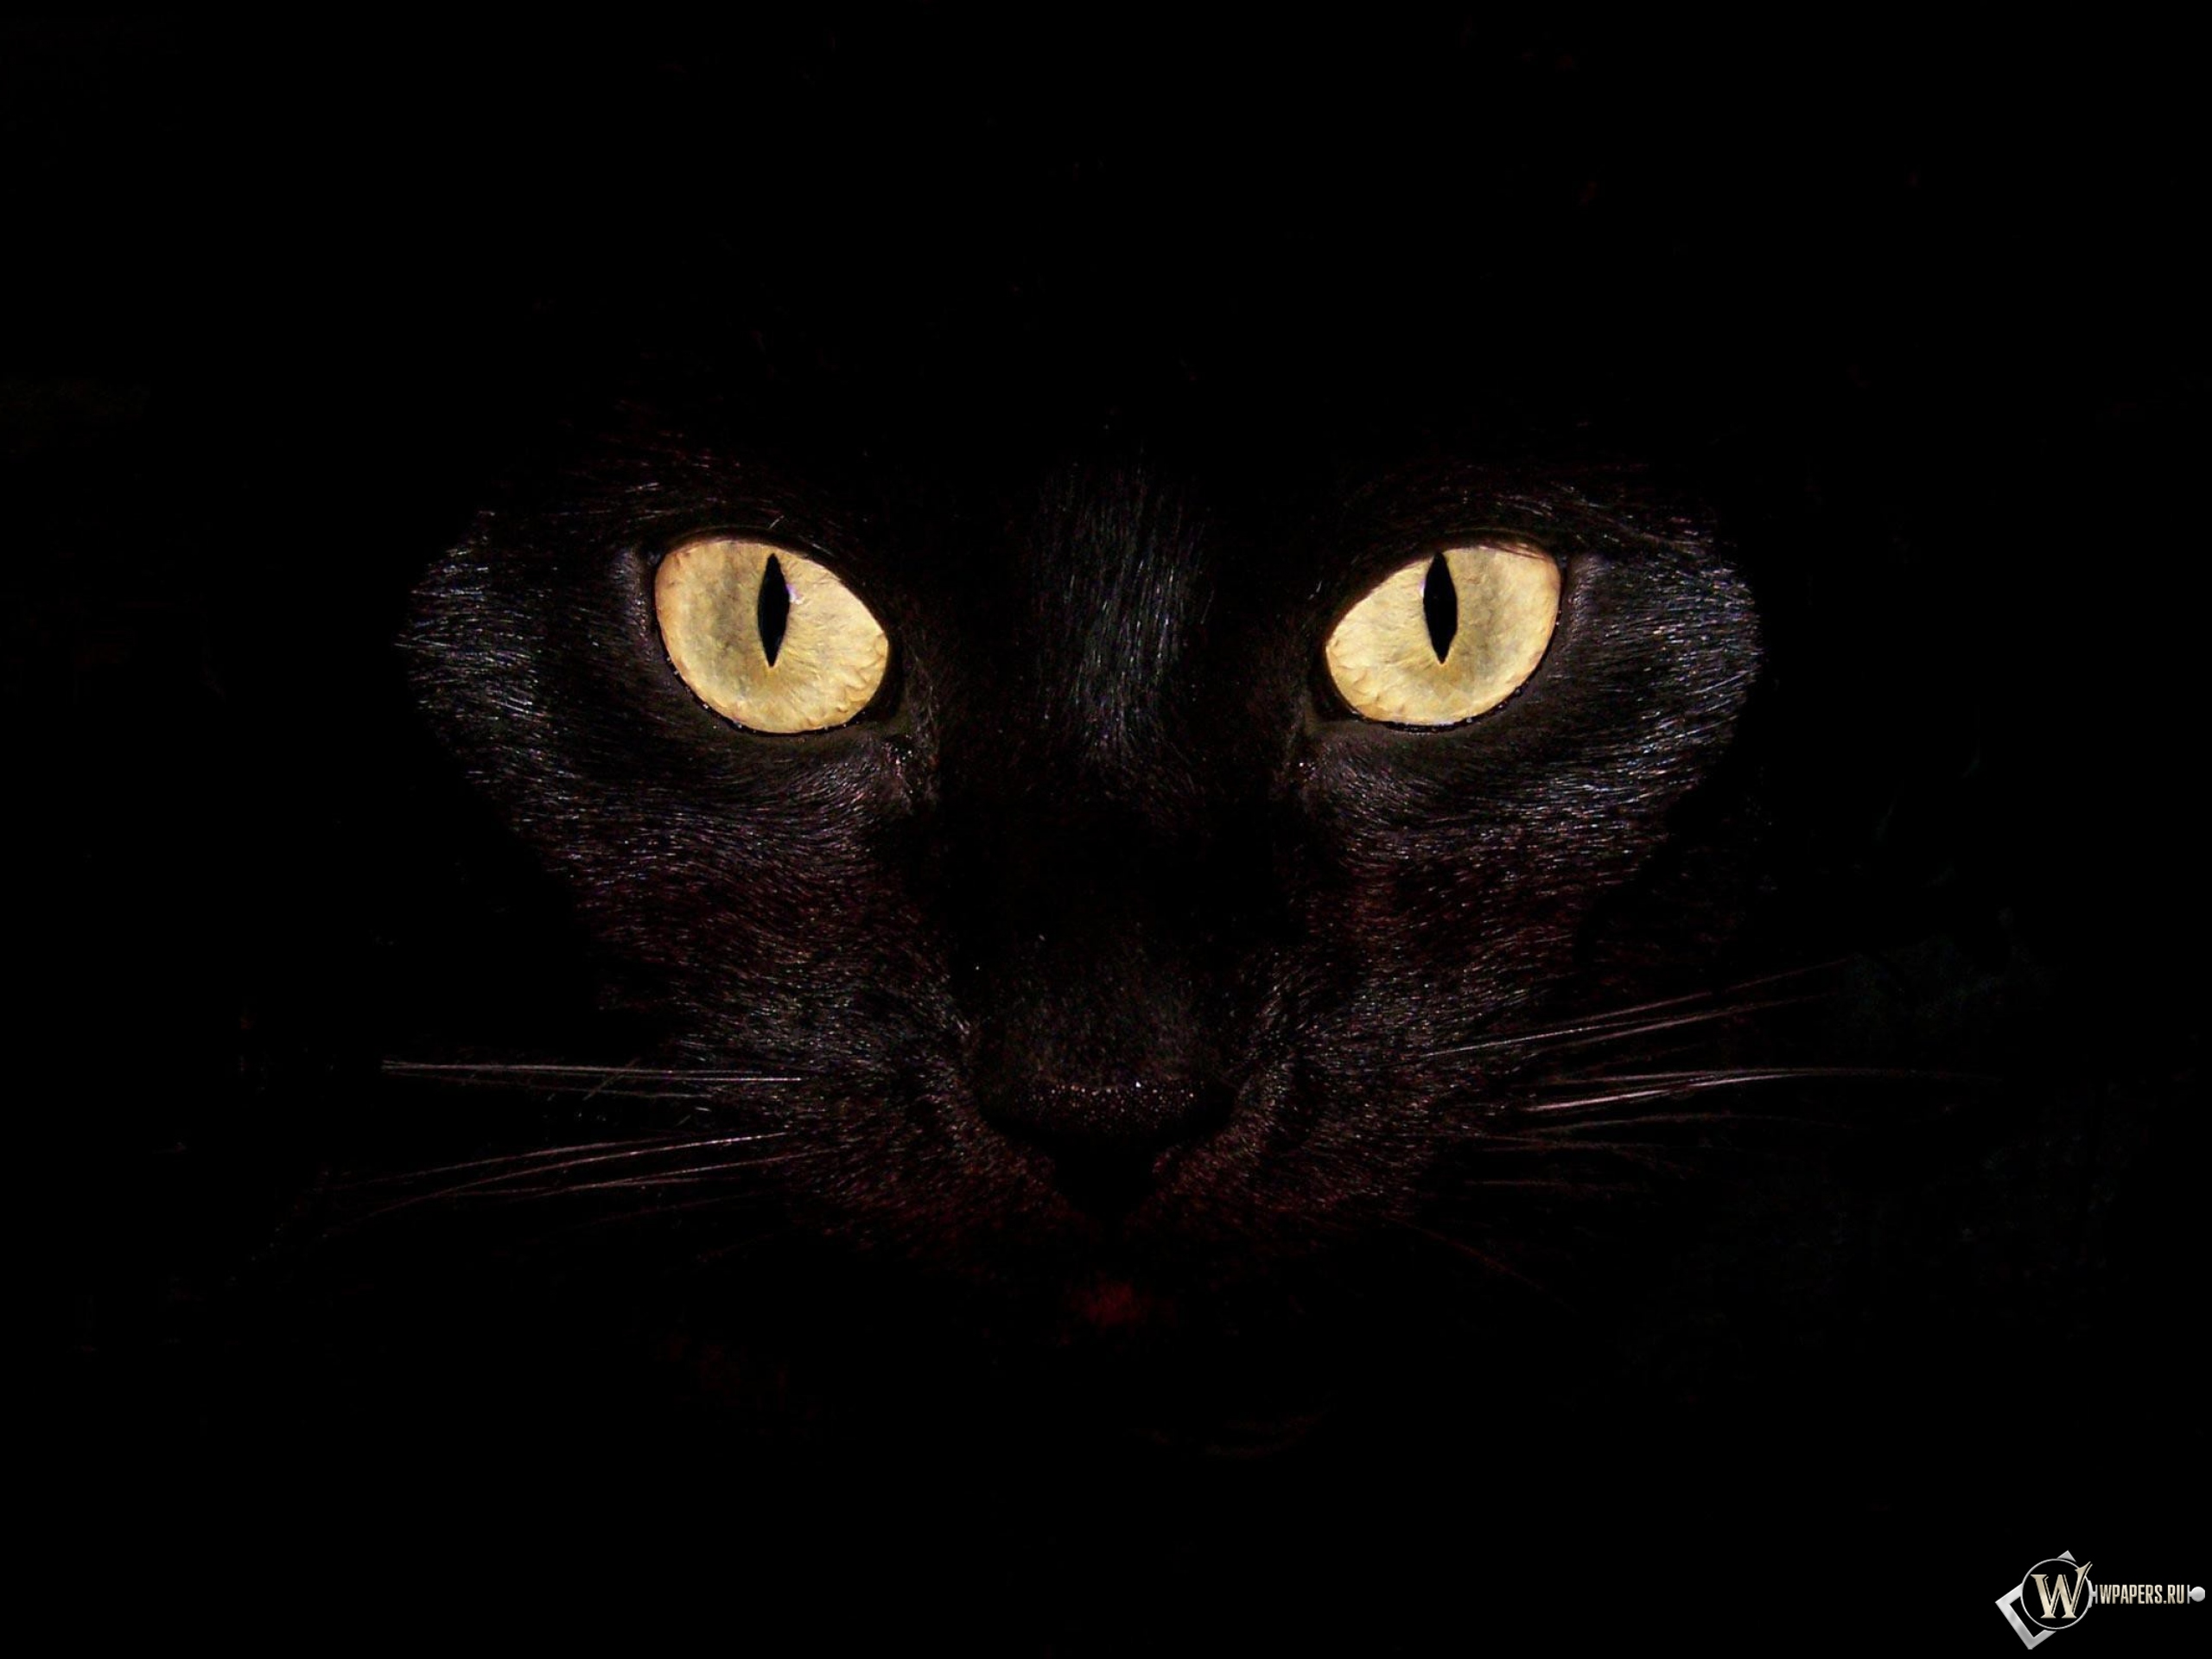 Черная кошка на чернофм фоне 2560x1920